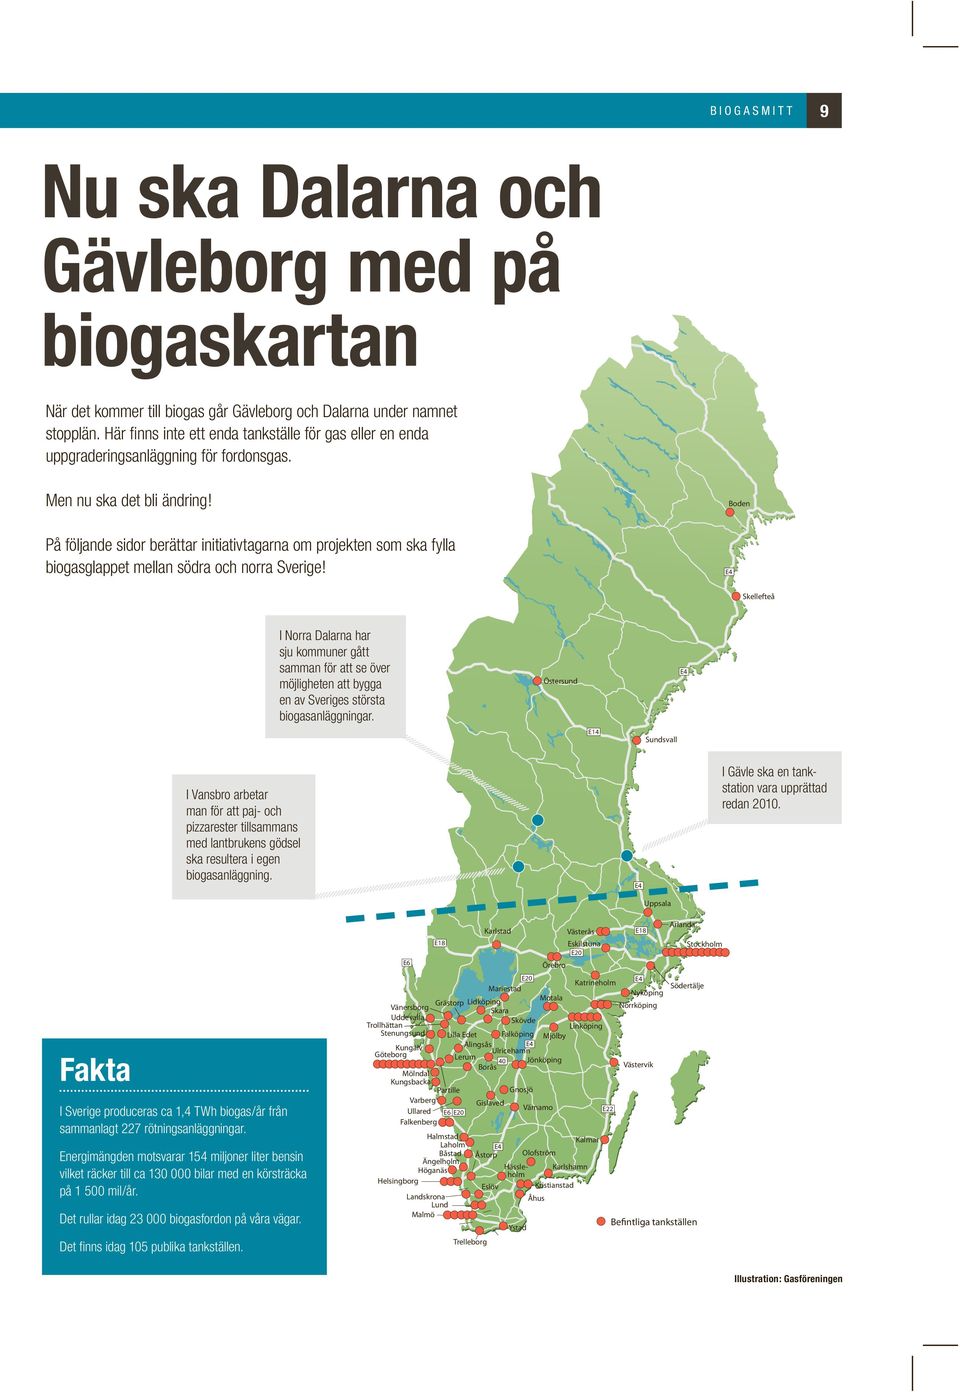 Boden På följande sidor berättar initiativtagarna om projekten som ska fylla biogasglappet mellan södra och norra Sverige!